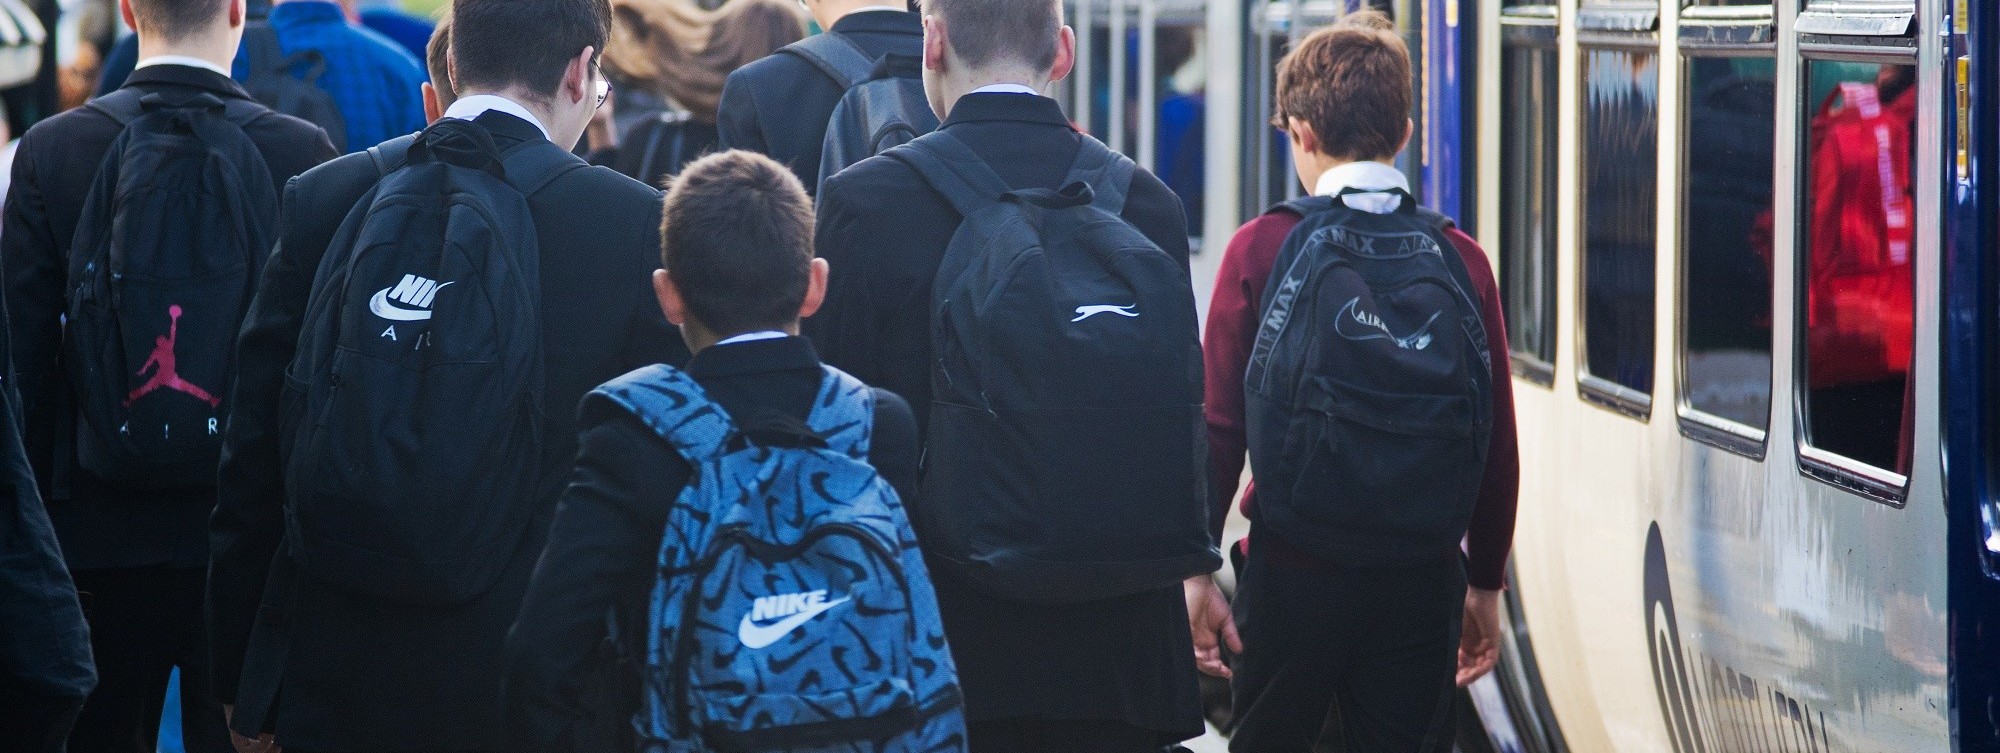 image-shows-schoolchildren-commuting-to-school